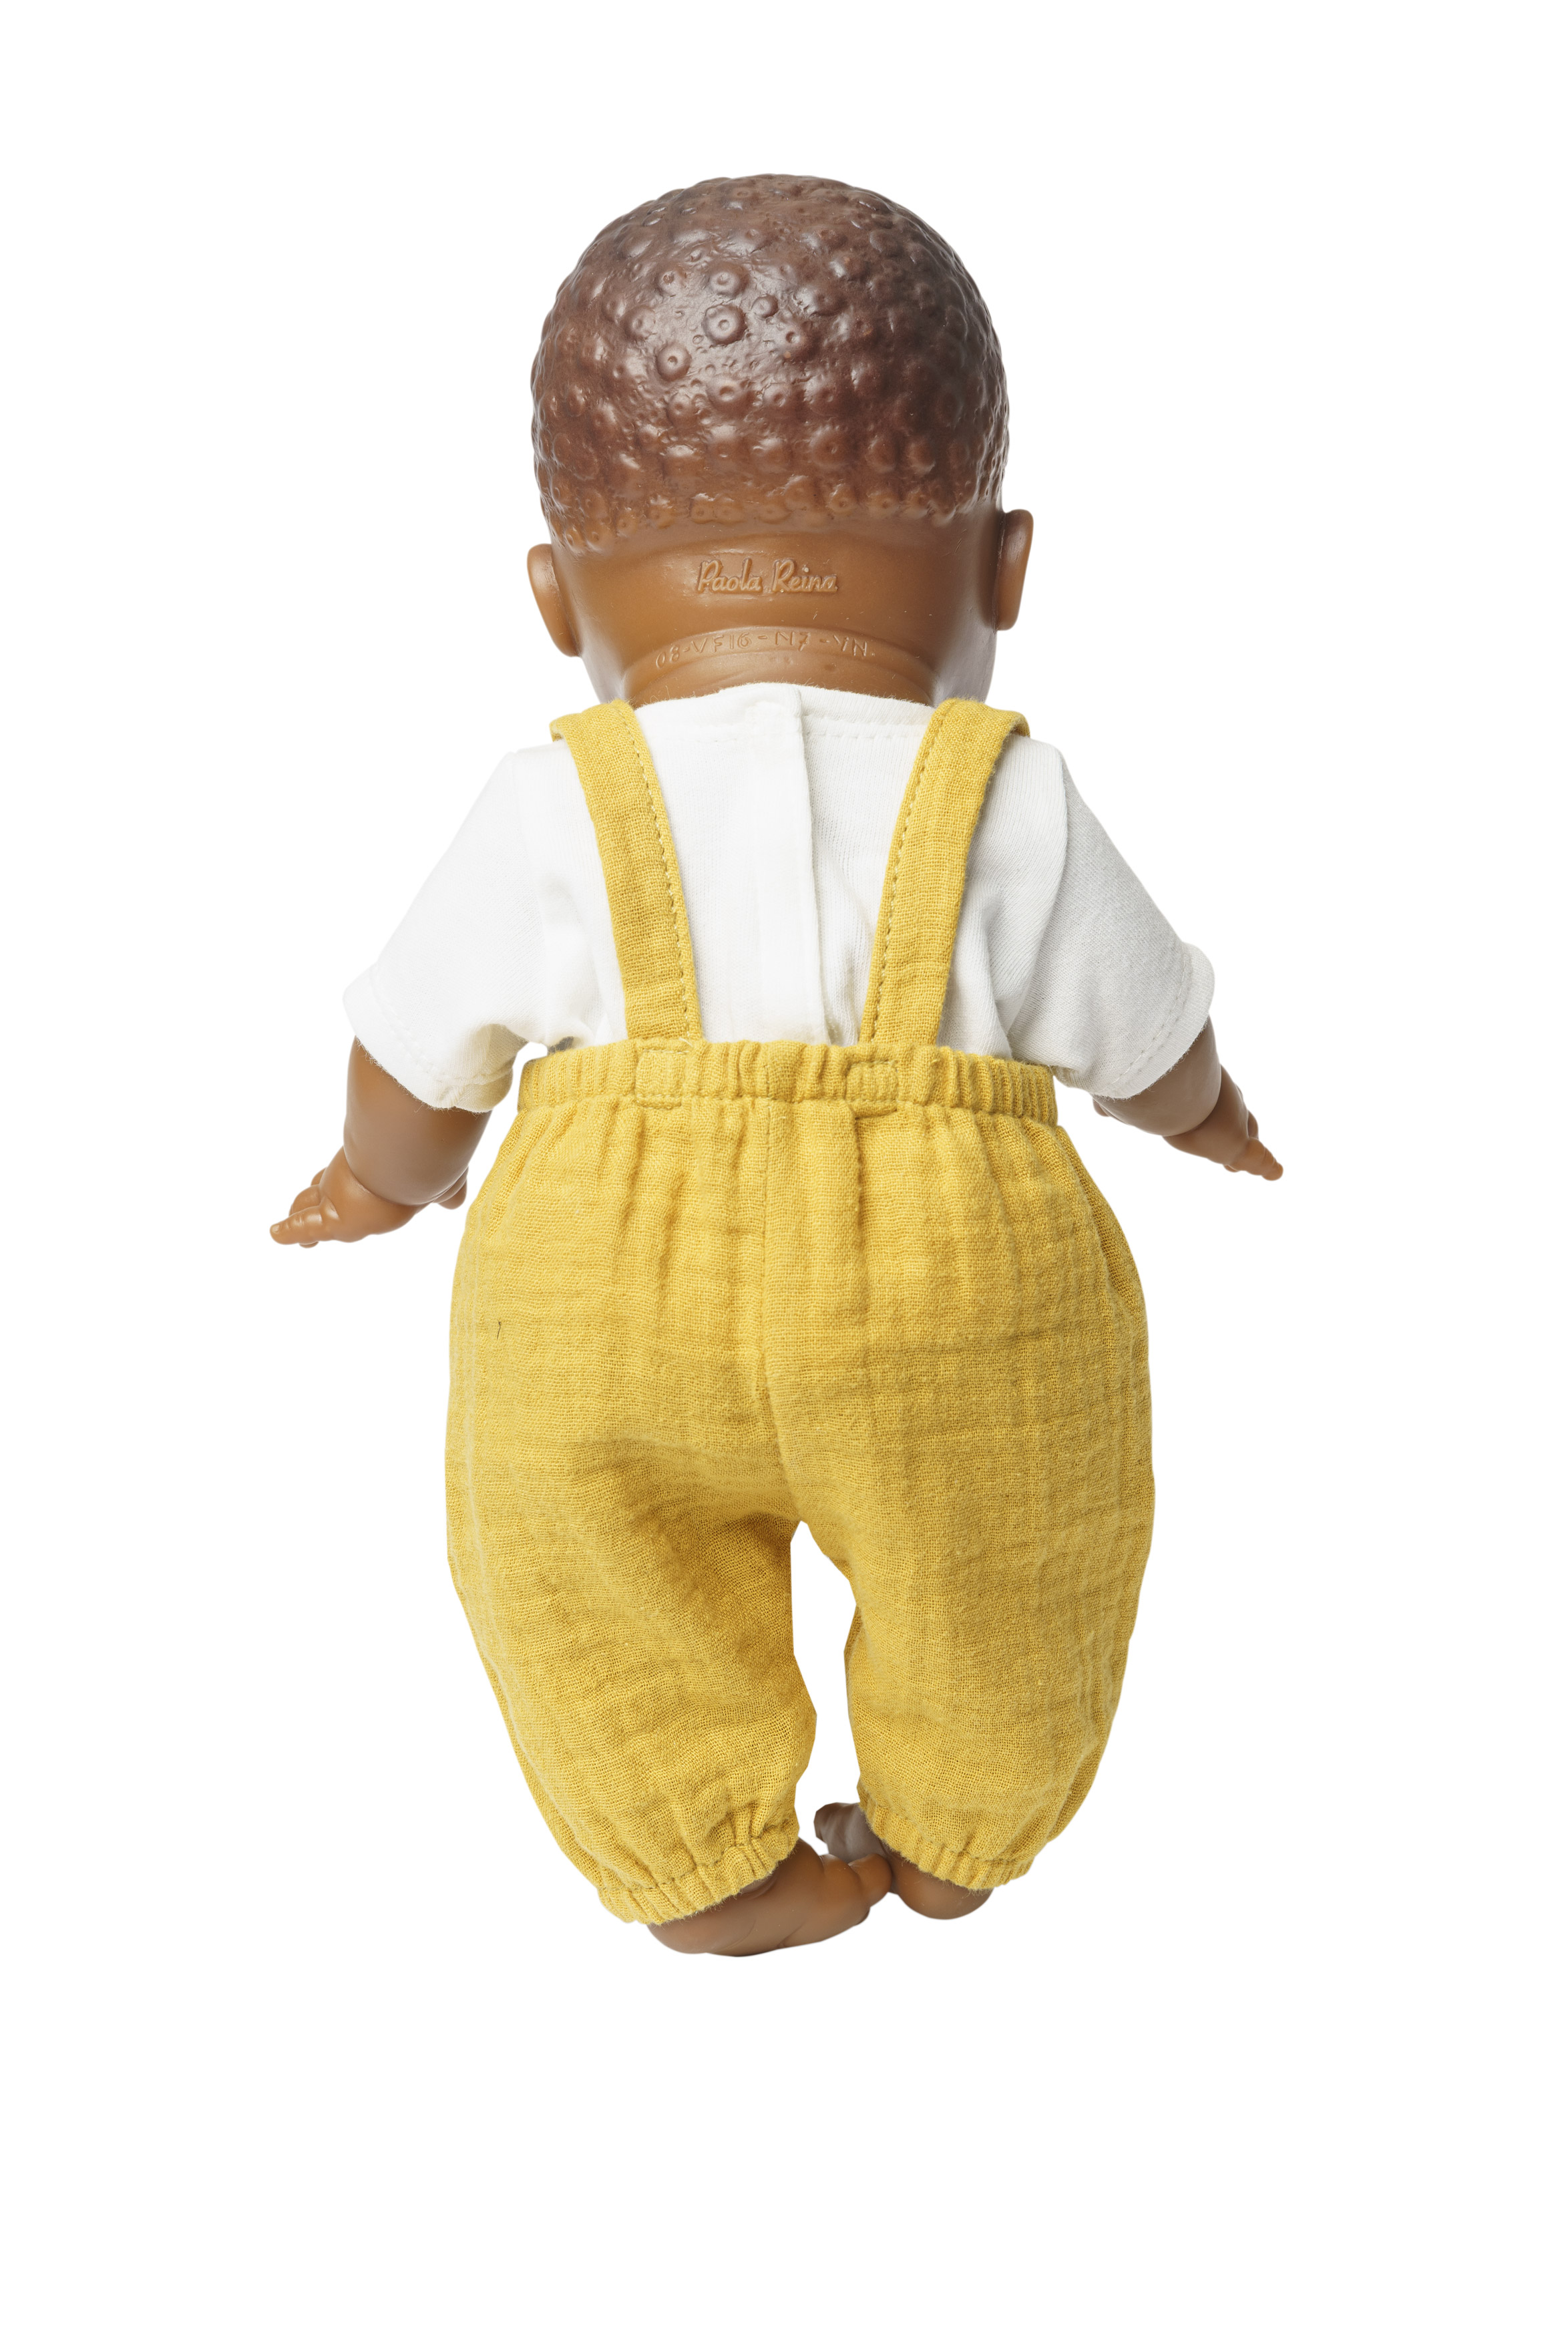 Puppen-Latzhose aus 100 % Bio-Baumwolle, honiggelb, mit weißem T-Shirt, 2-teilig, Gr. 28-35 cm